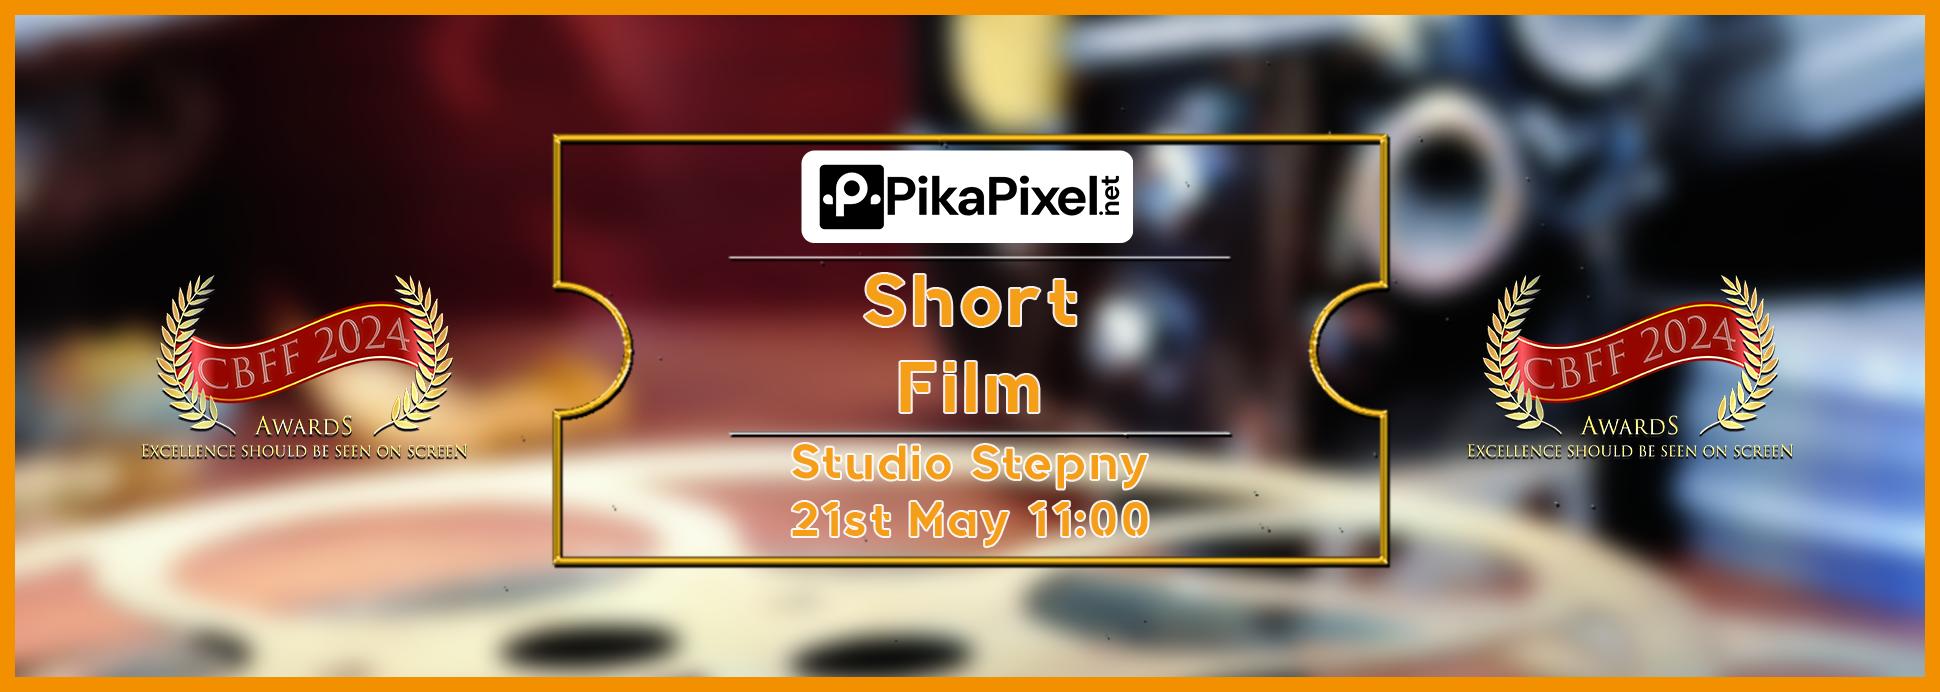 Tuesday 21st 11:00 Studio Stepny Short Film